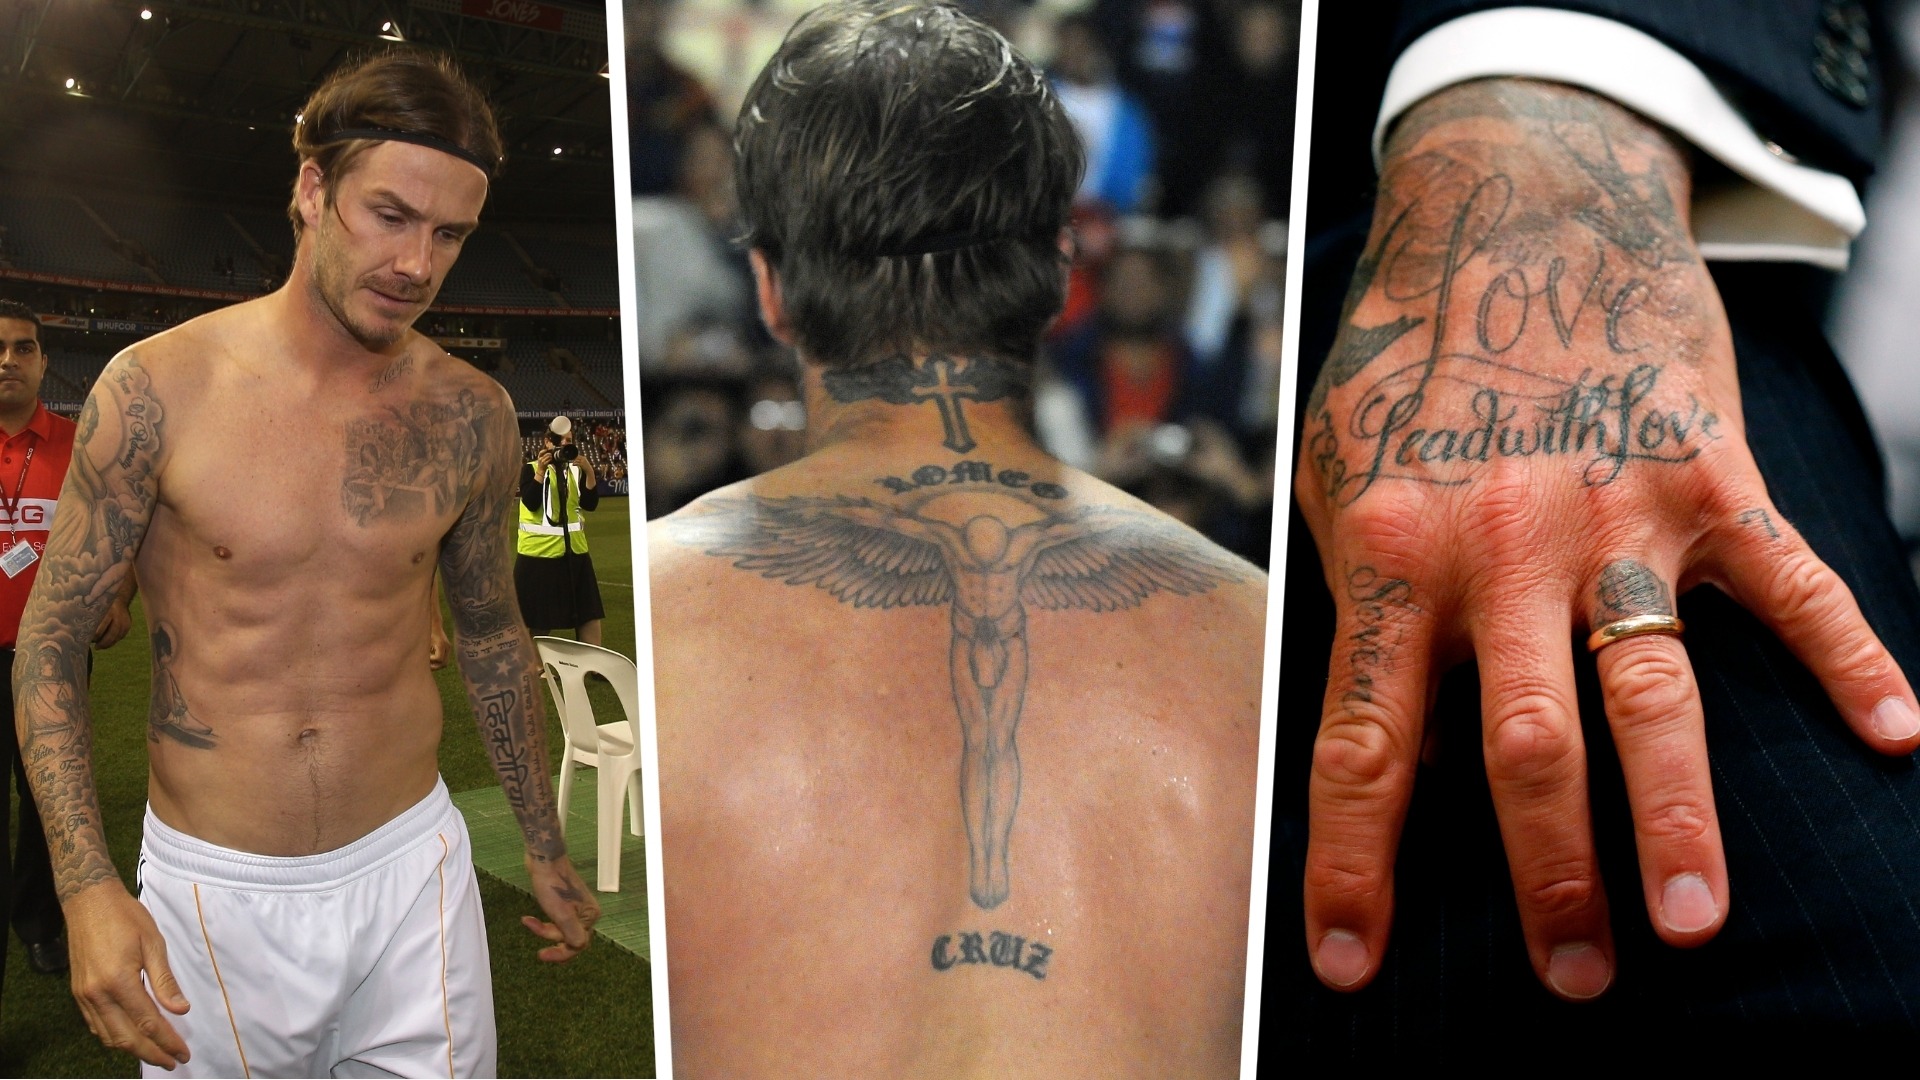 Ý nghĩa hình xăm David Beckham trên cơ thể